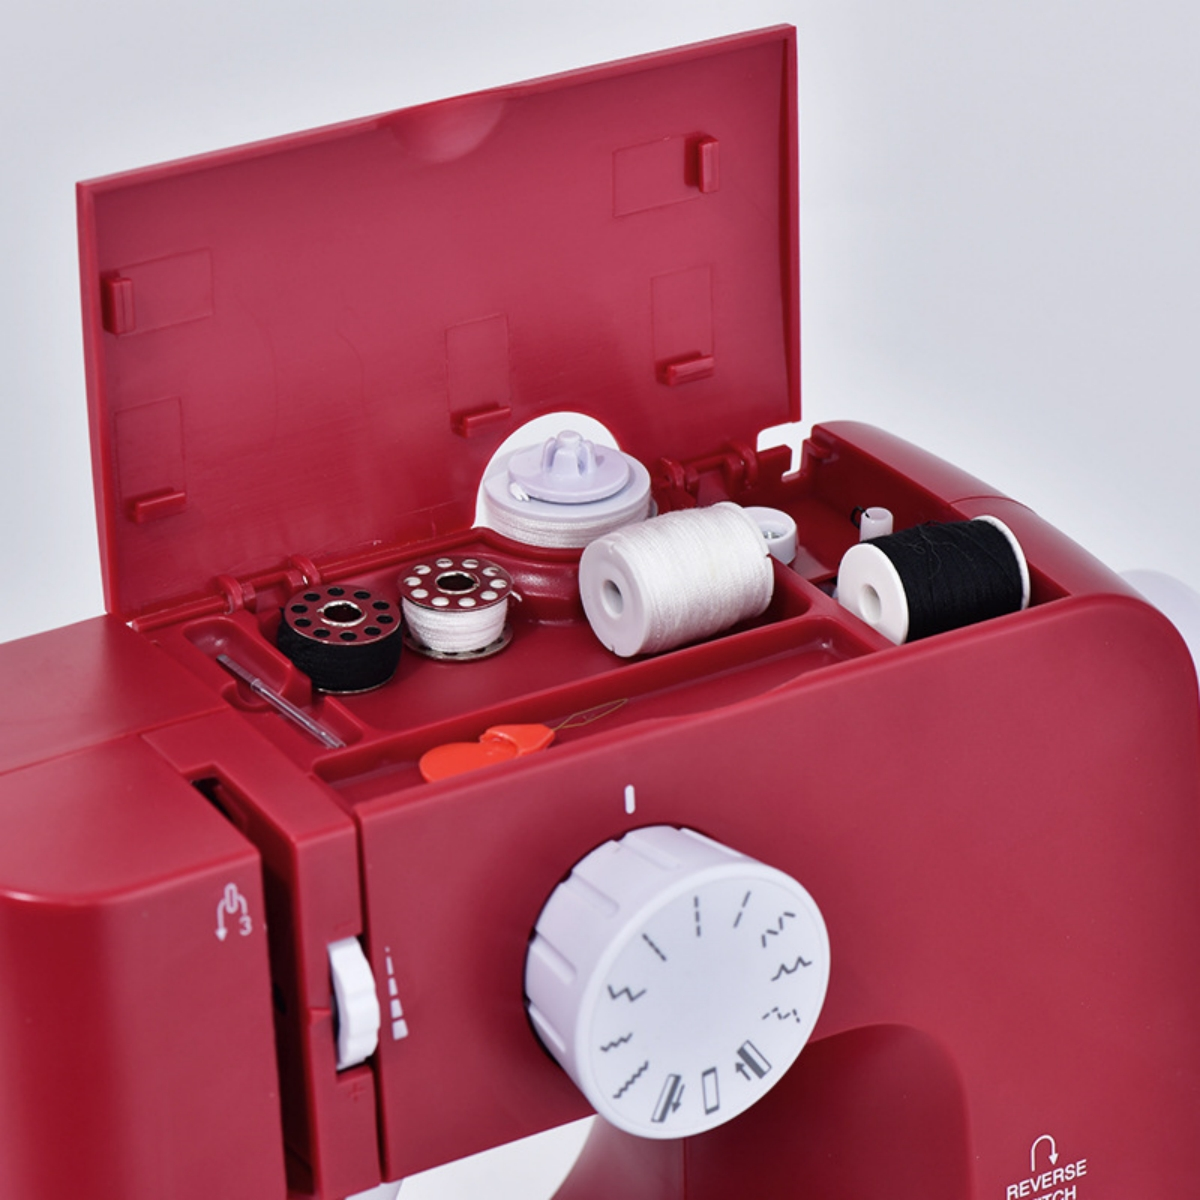 SYNTEK Mini-Elektro-Nähmaschine, Vollautomatisch und Nähmaschine Multifunktional, Rot mit Overlock